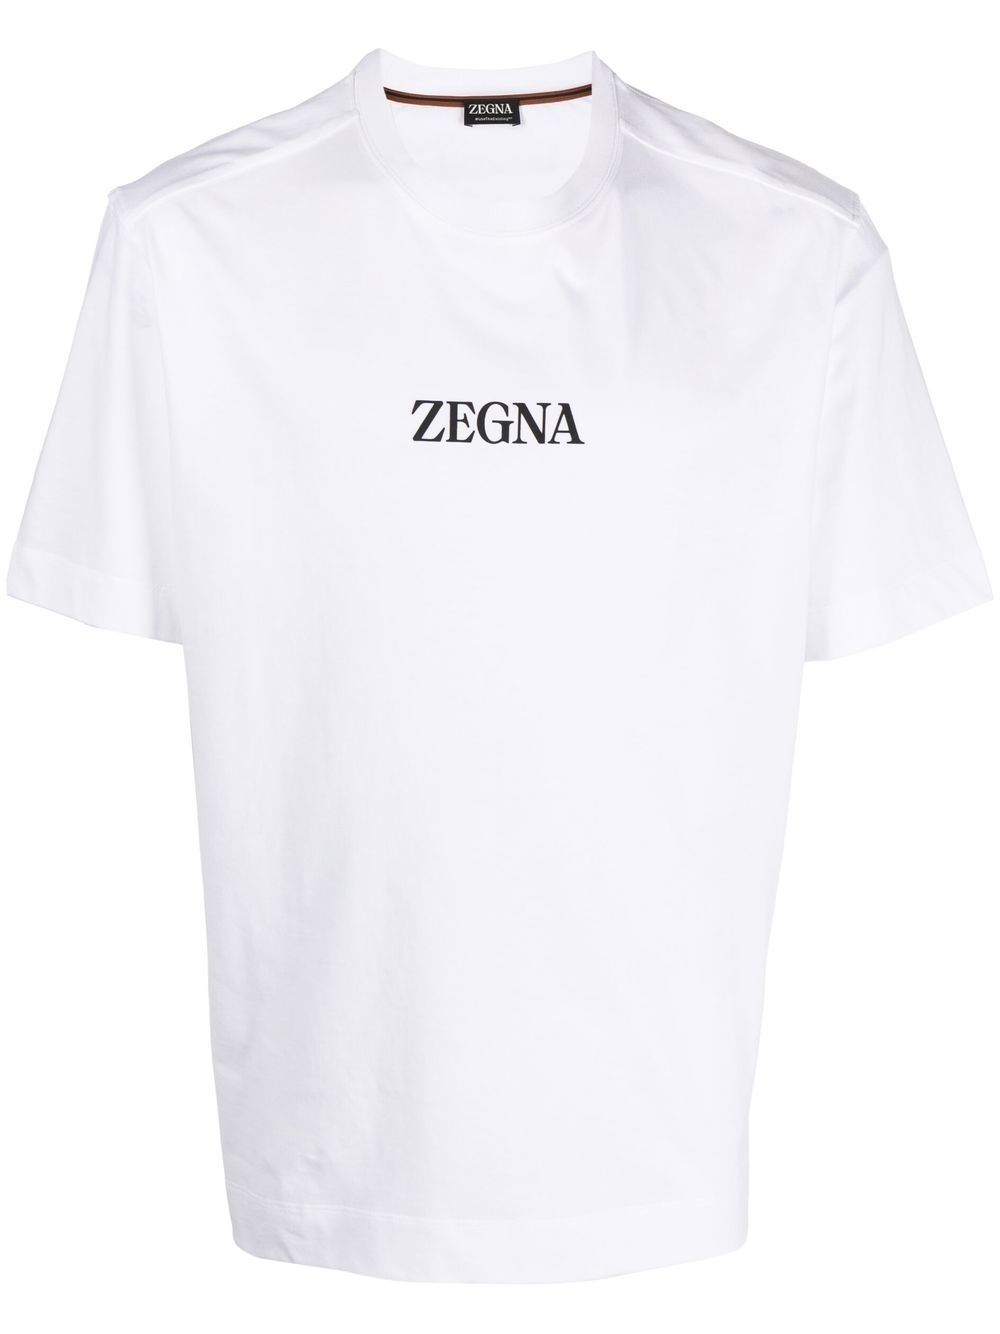 T-shirt girocollo con stampa logo<br><br><br>